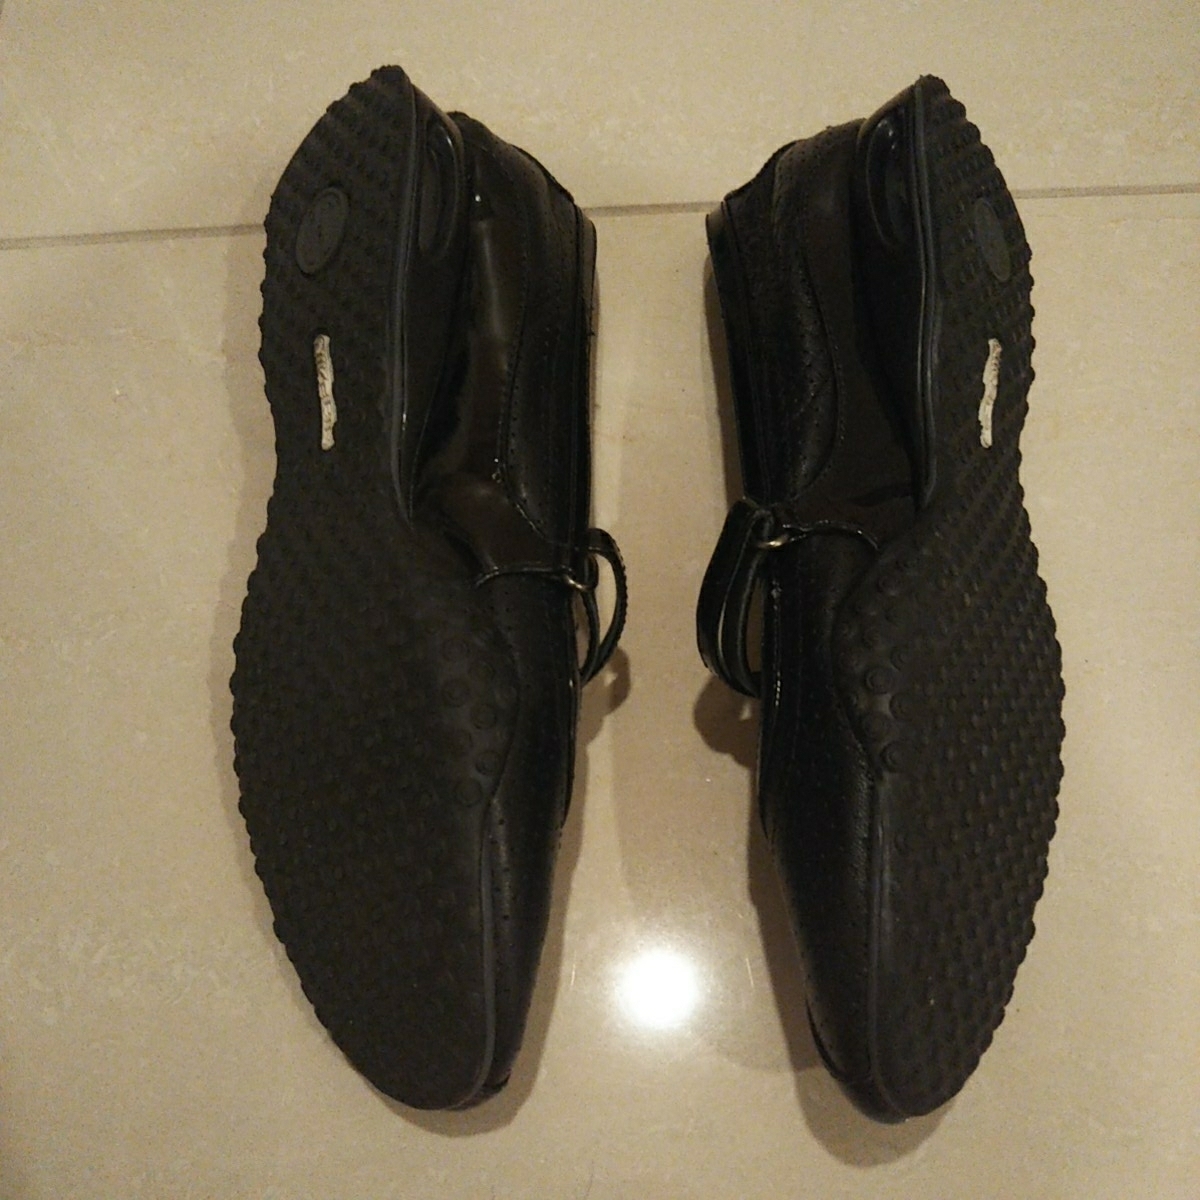  обувь low fa call рукоятка × Nike воздушный легкий чёрный цвет эмаль перфорирование резина низ скользить . нет . ощущение хороший . текстильная застёжка размер 7B 24. ранг прекрасный товар 